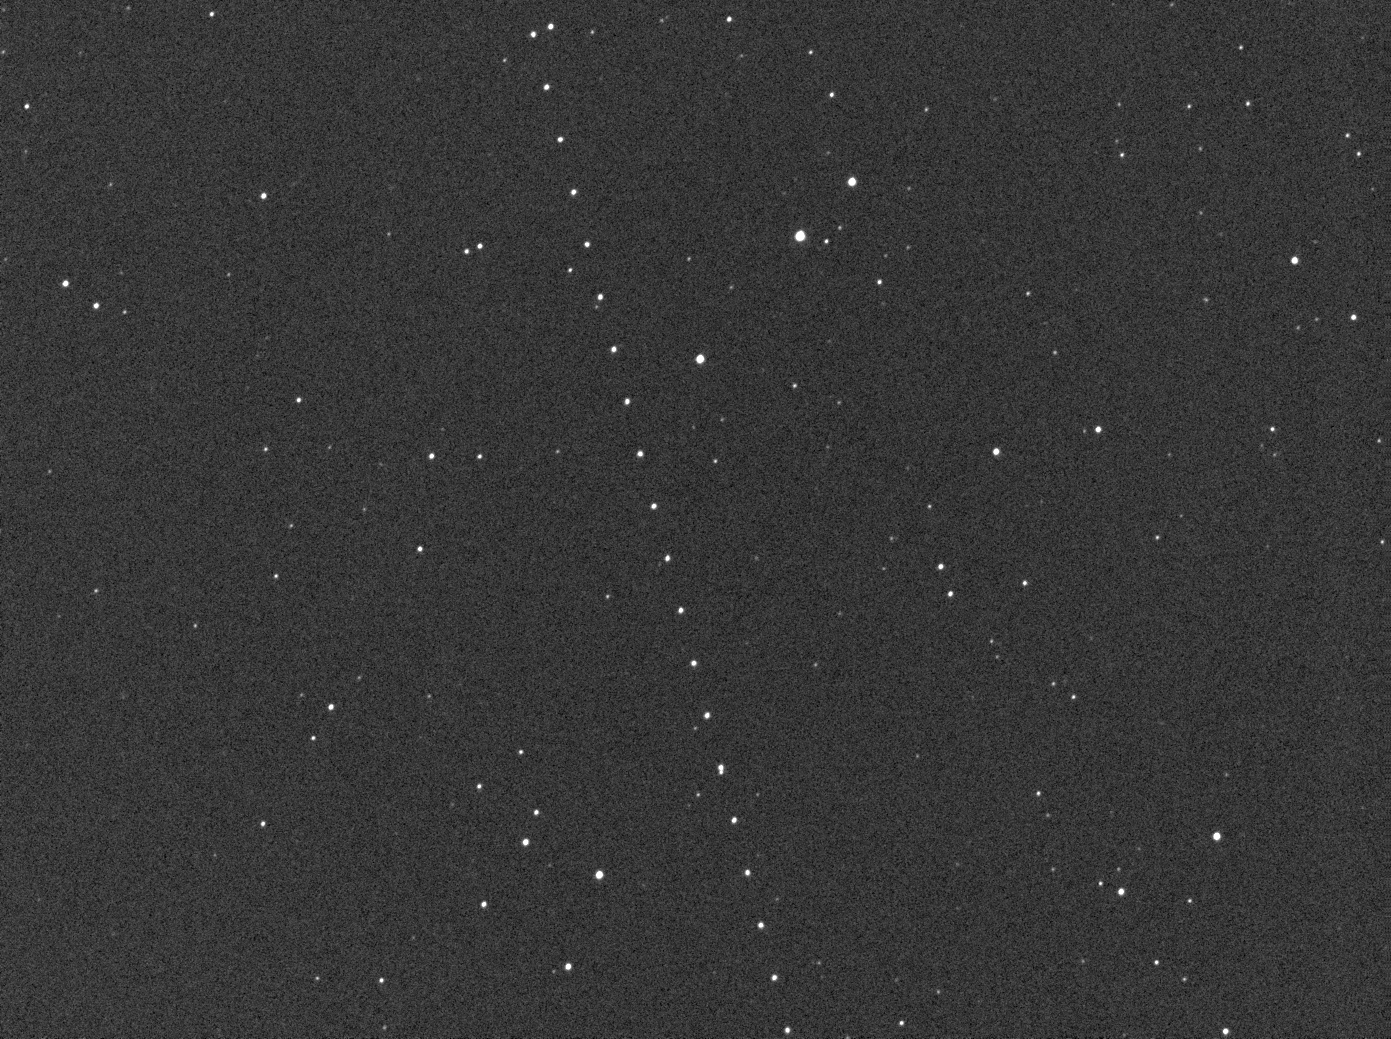 Asteroid 2004 BL86 (357439) am 26. Jänner 2015